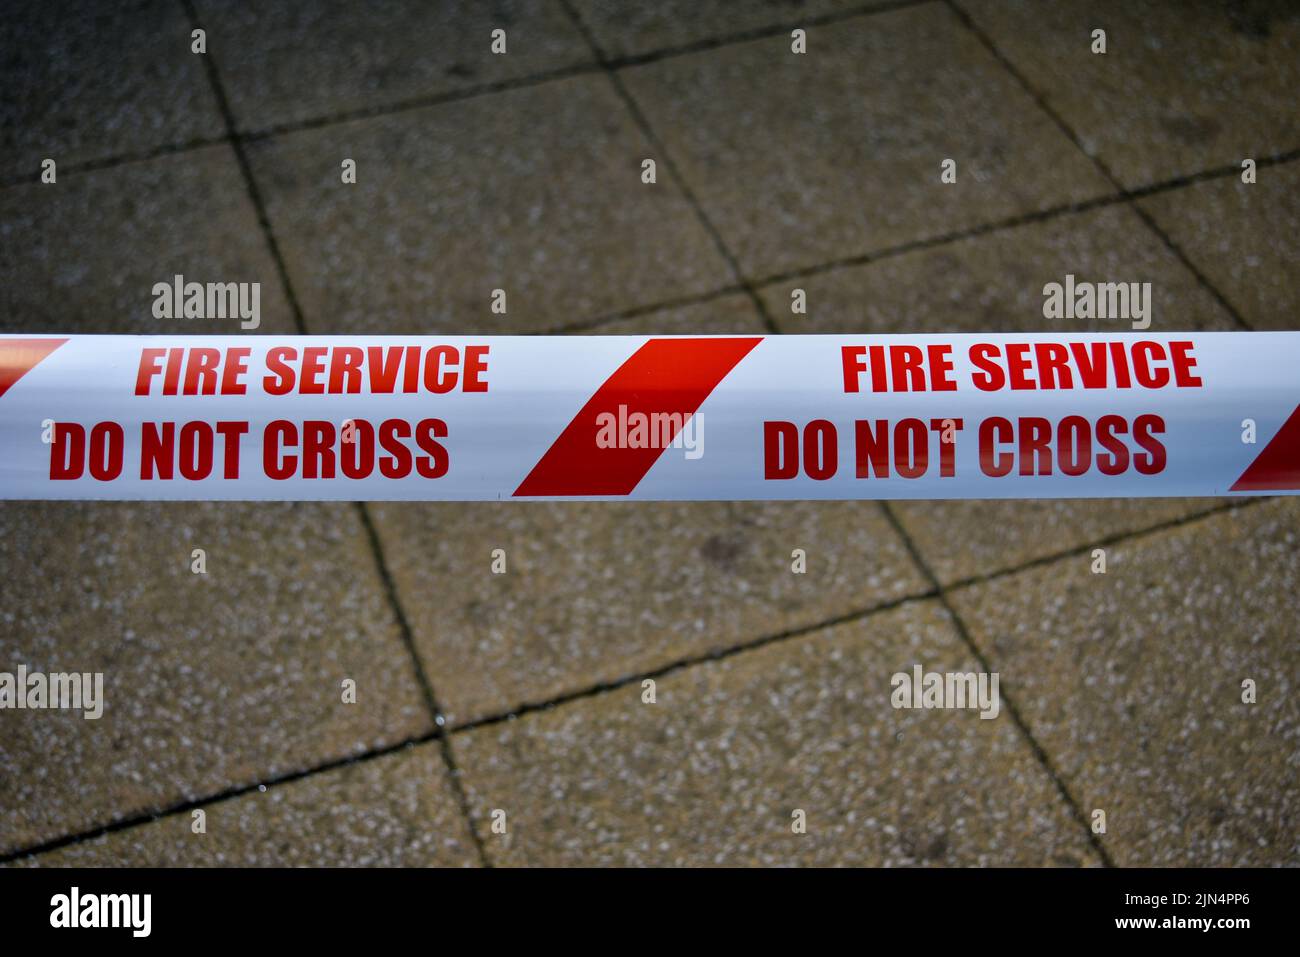 Nastro di sicurezza per i servizi antincendio a strisce rosse e bianche, con un avvertimento di non incrociare. Foto Stock